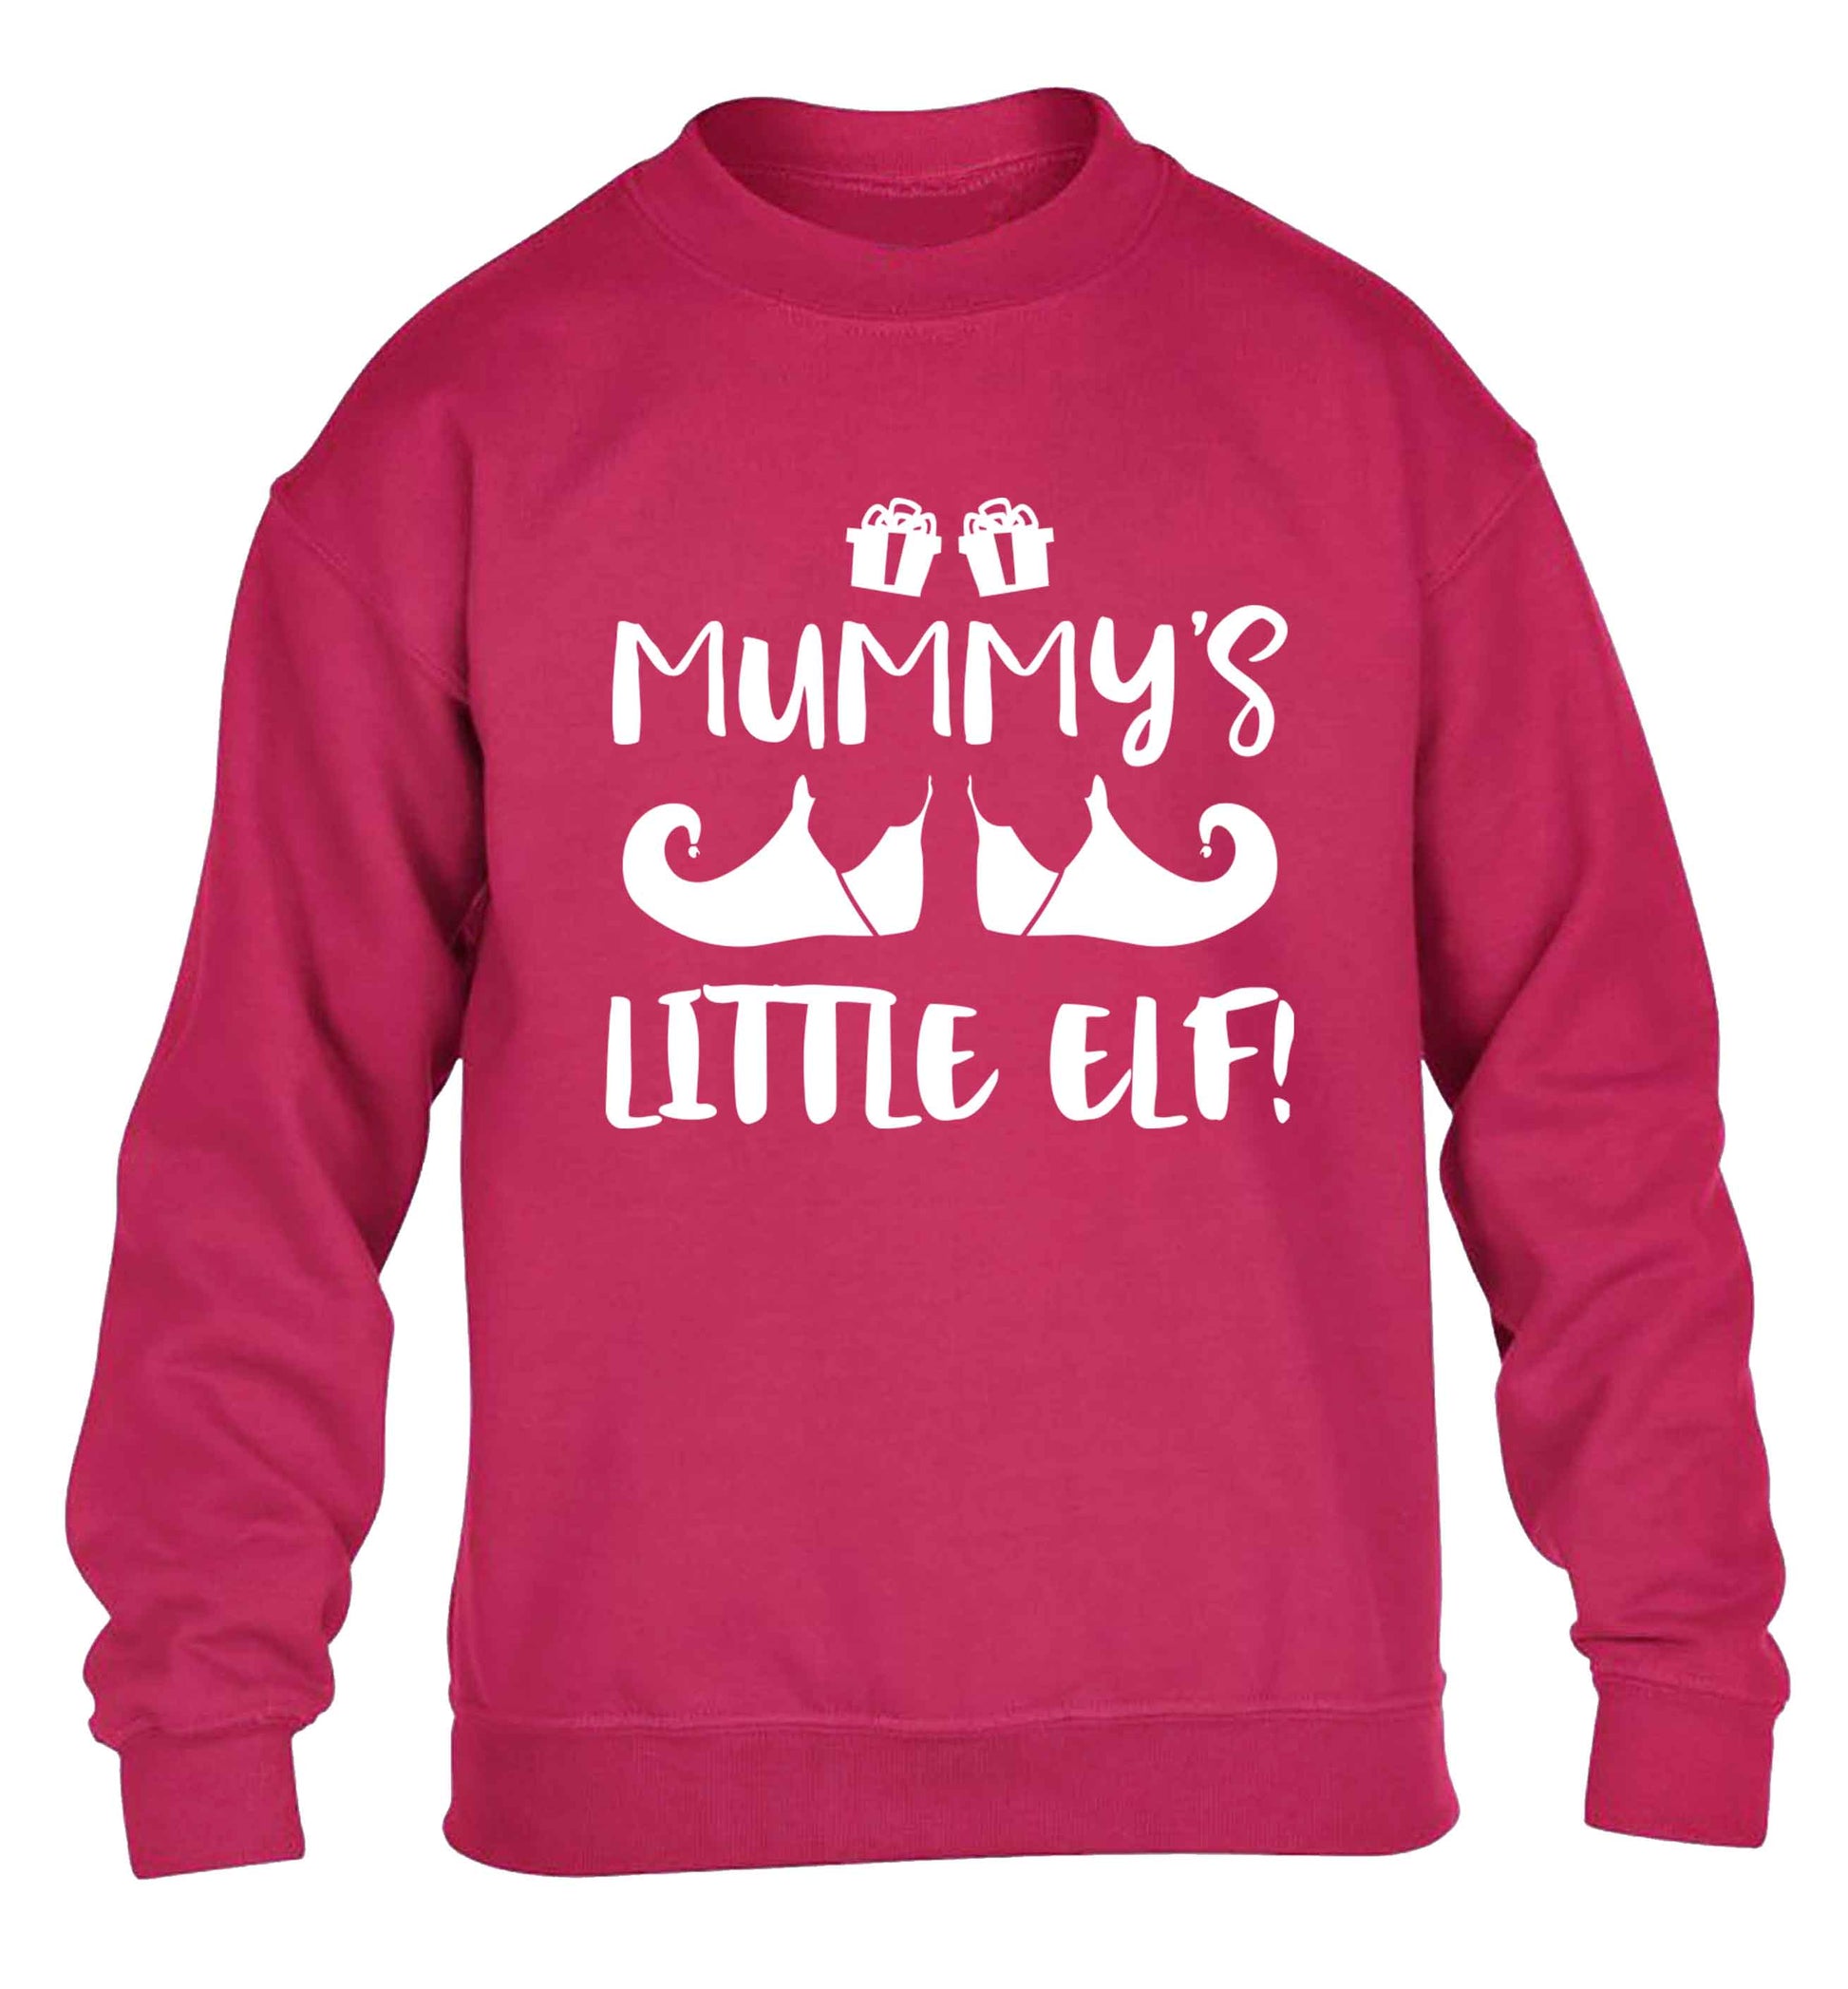 Mummy's little elf children's pink sweater 12-13 Years